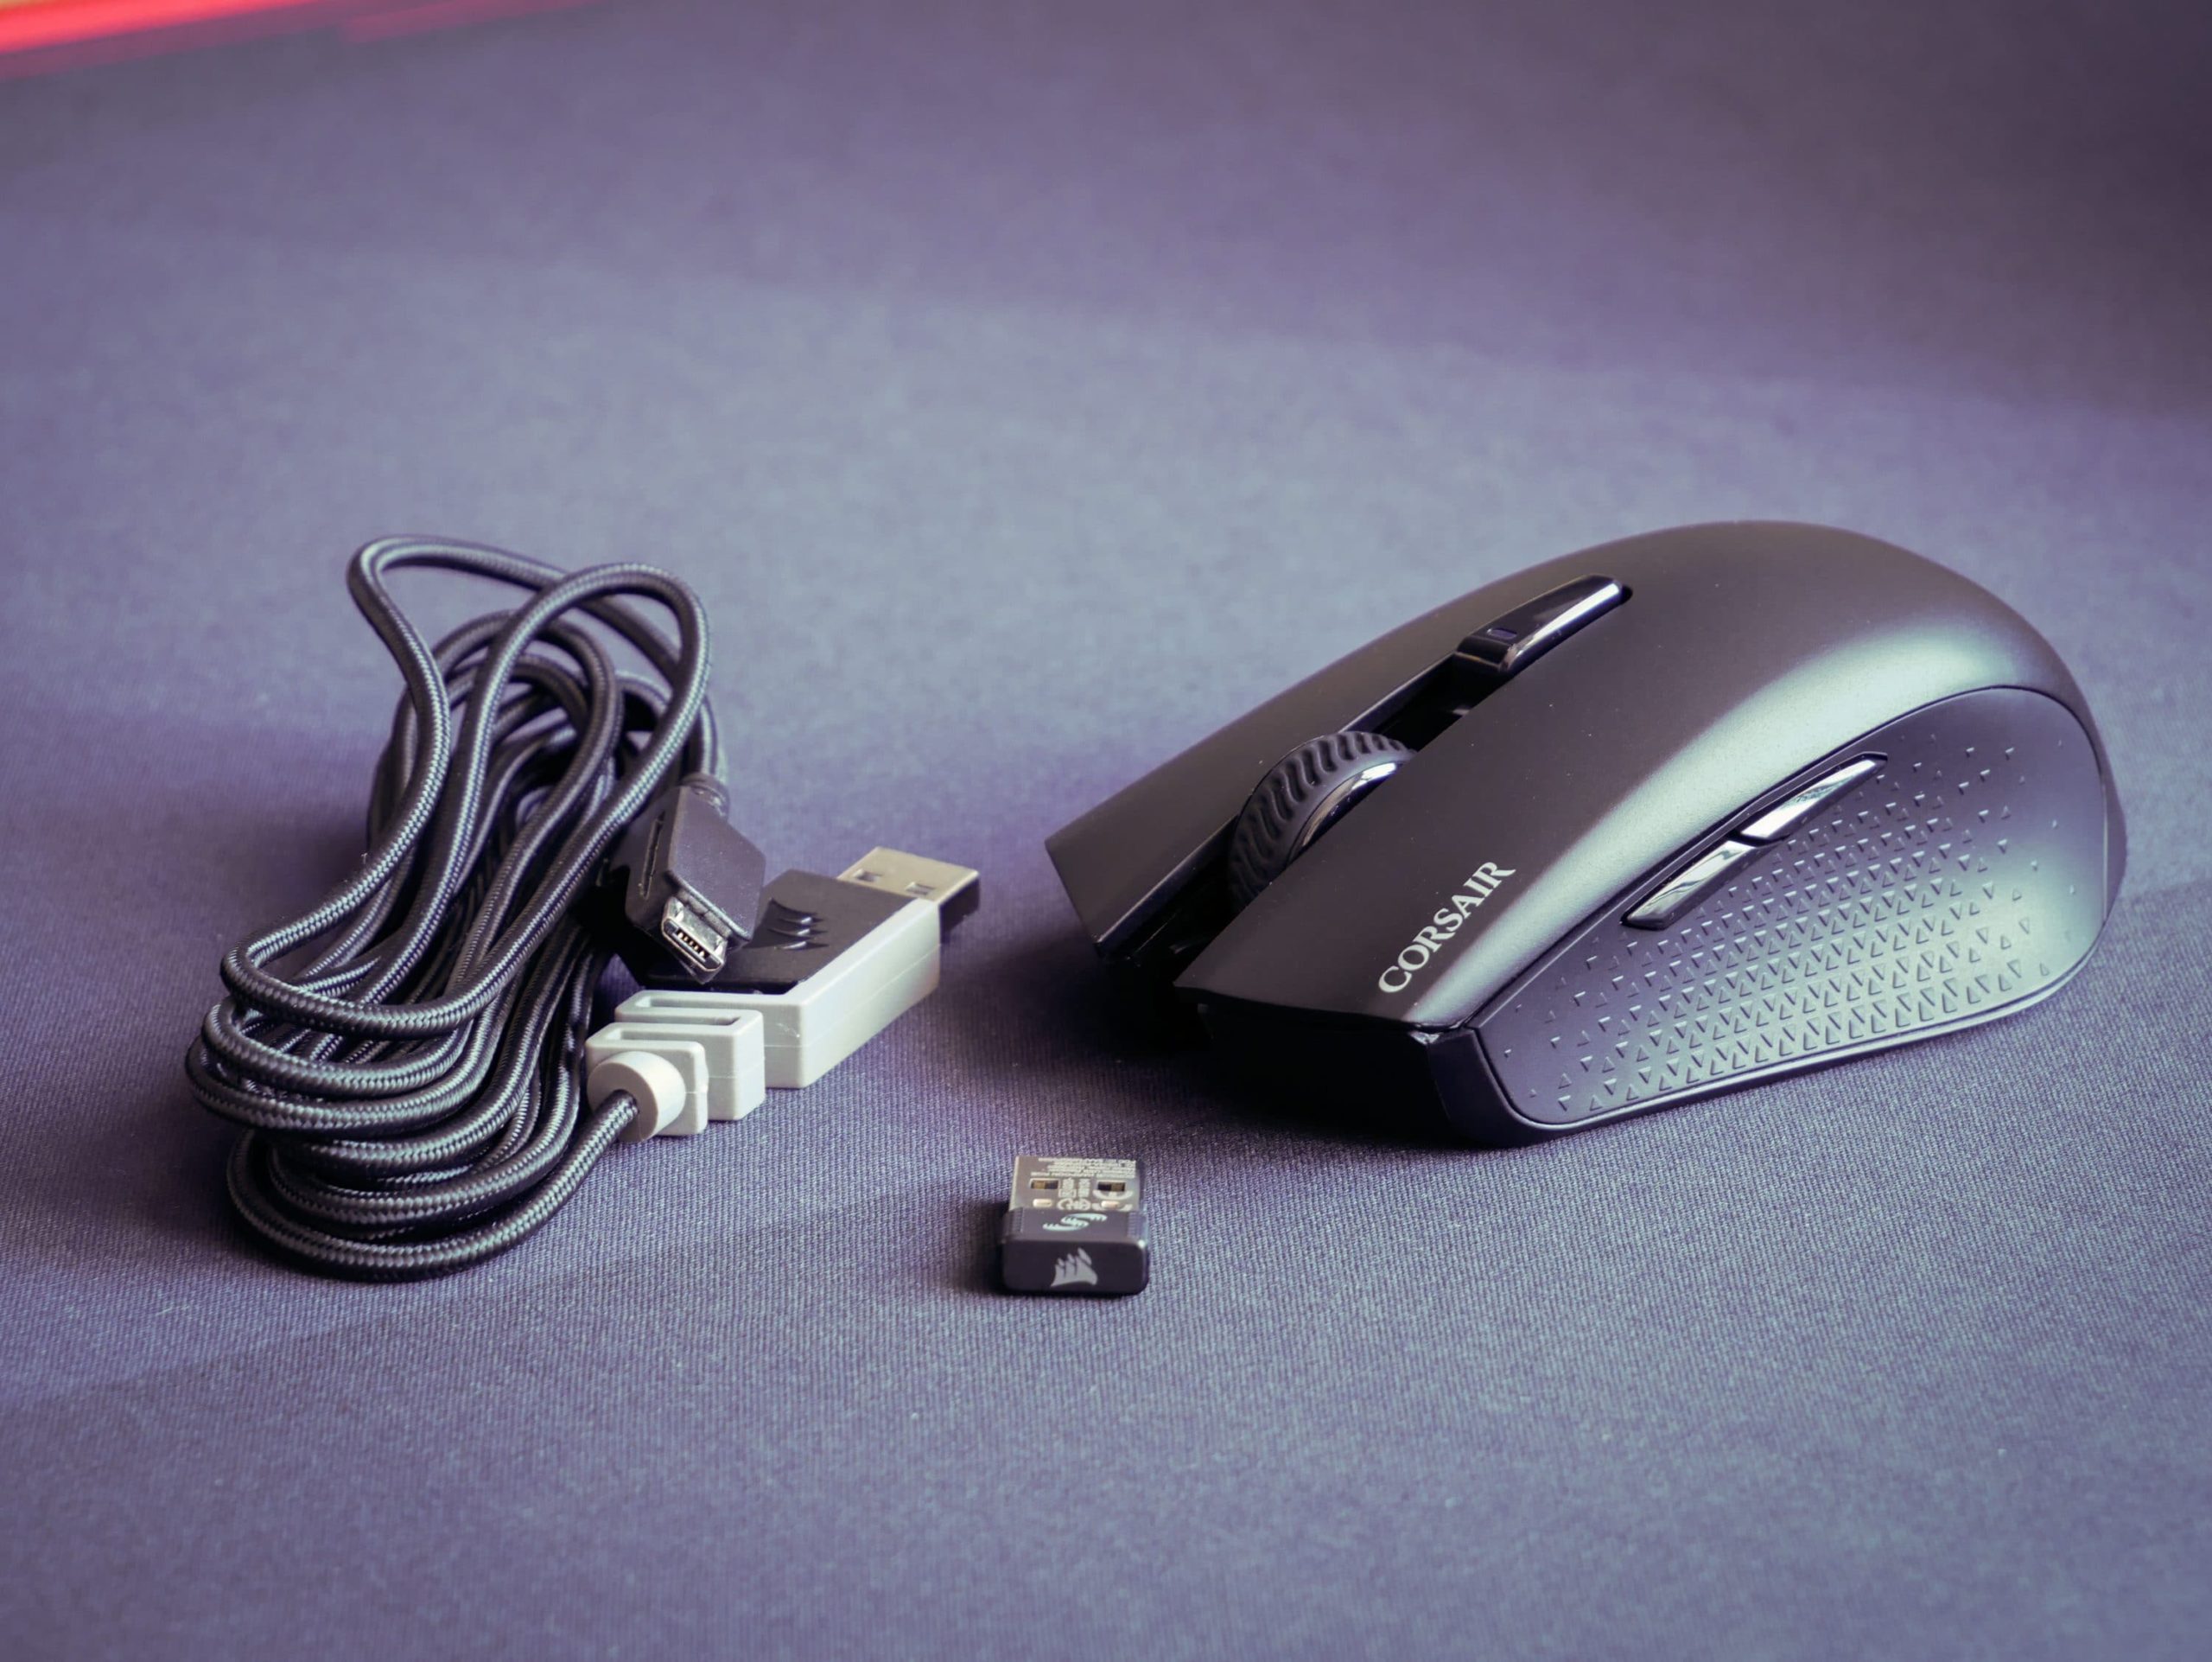 Test : Du vrai jeu sans fil avec la souris sans fil Corsair